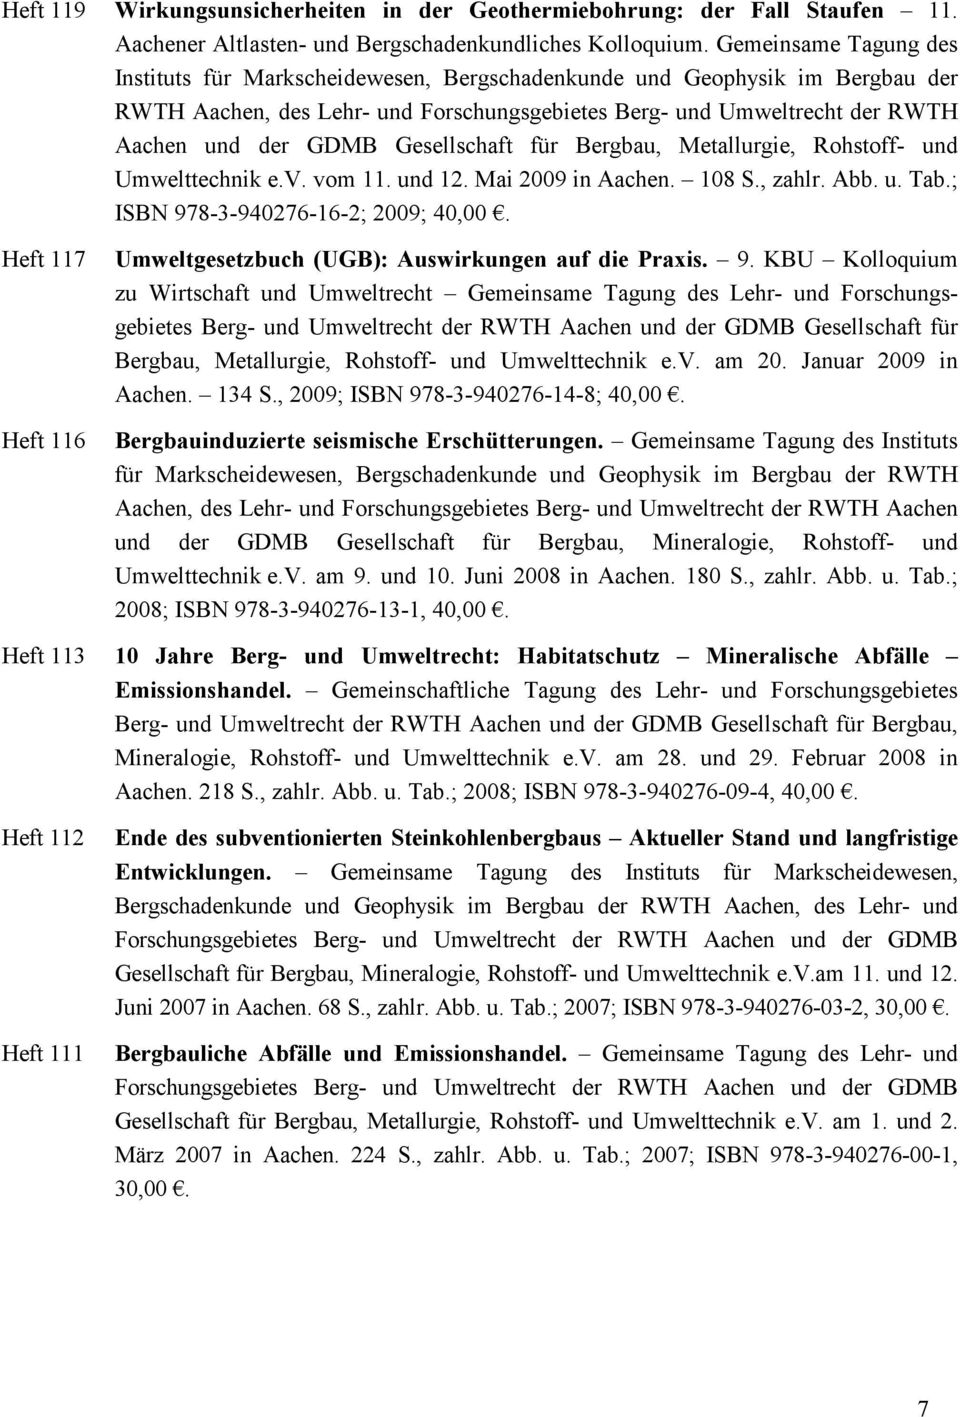 Gesellschaft für Bergbau, Metallurgie, Rohstoff- und Umwelttechnik e.v. vom 11. und 12. Mai 2009 in Aachen. 108 S., zahlr. Abb. u. Tab.; ISBN 978-3-940276-16-2; 2009; 40,00.